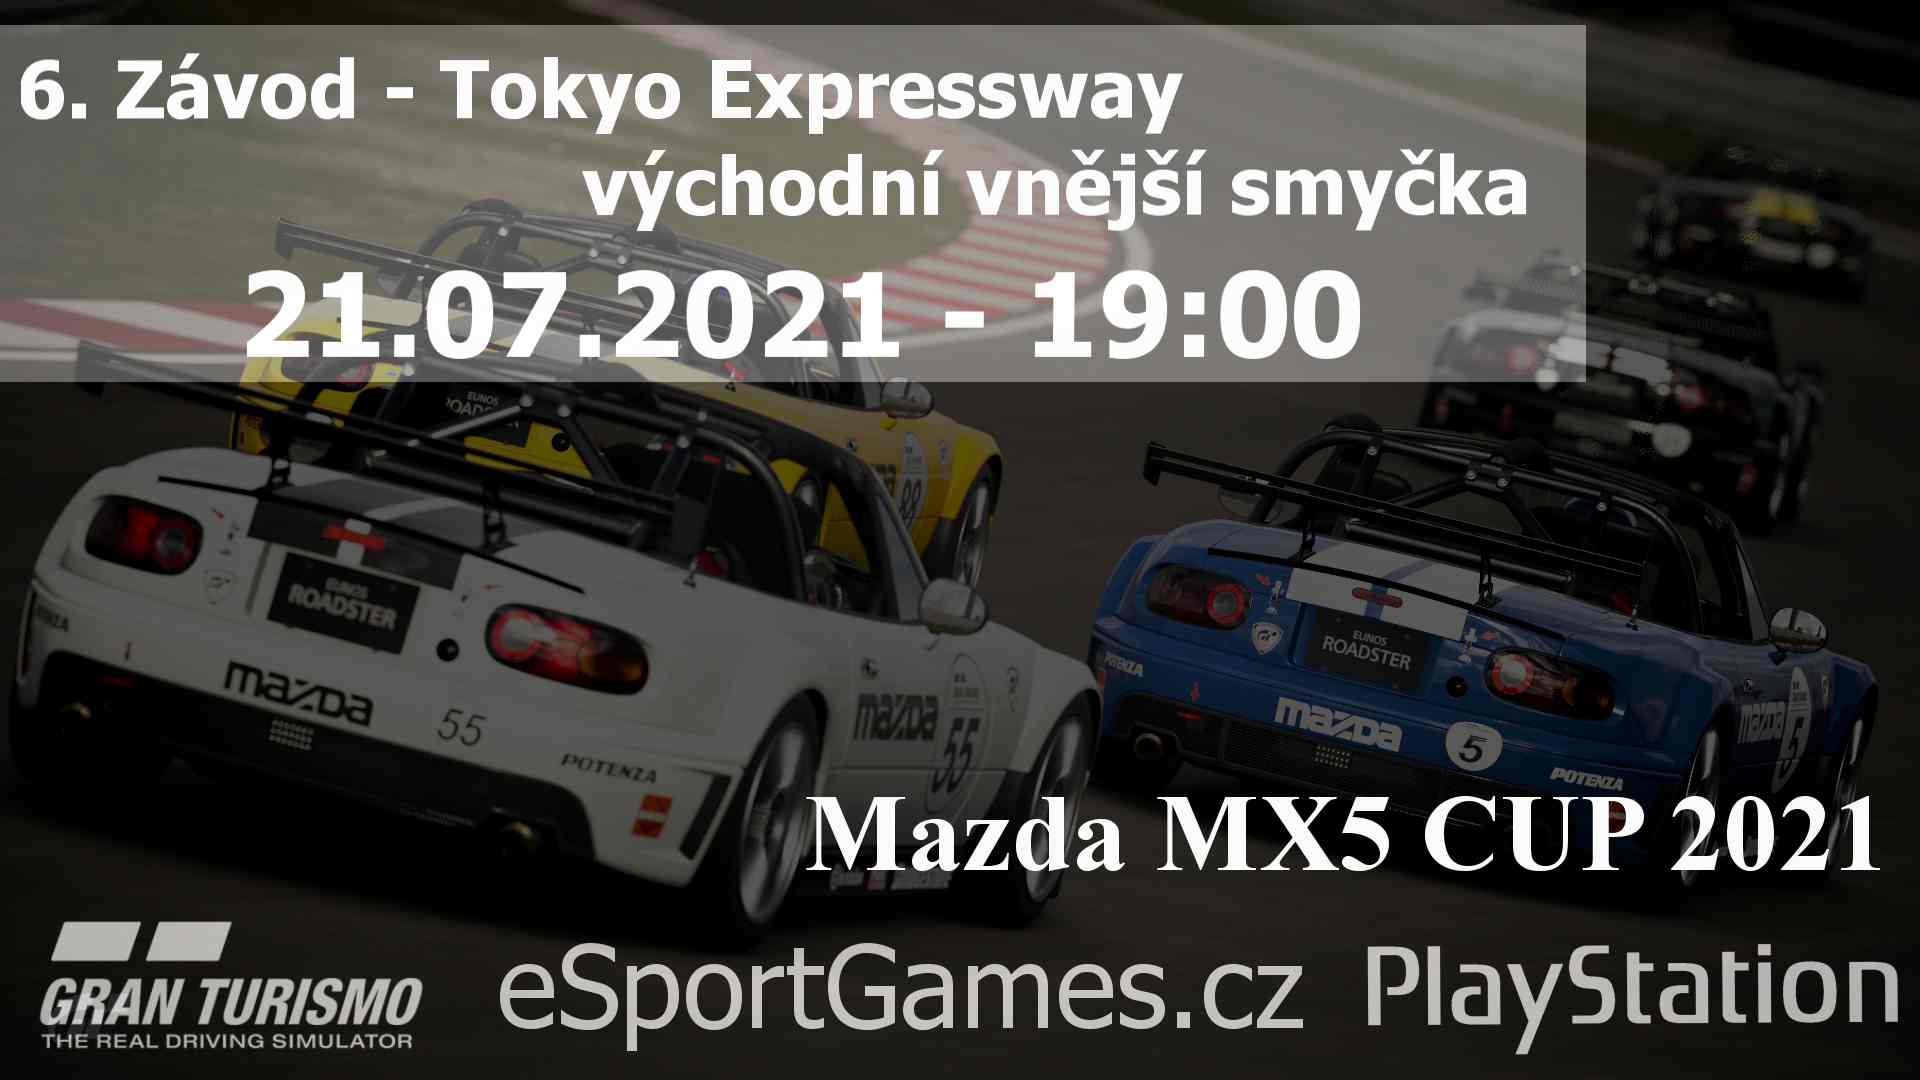 6. Závod - MX5 CUP 2021 - Tokyo Expressway - východní vnější smyčka